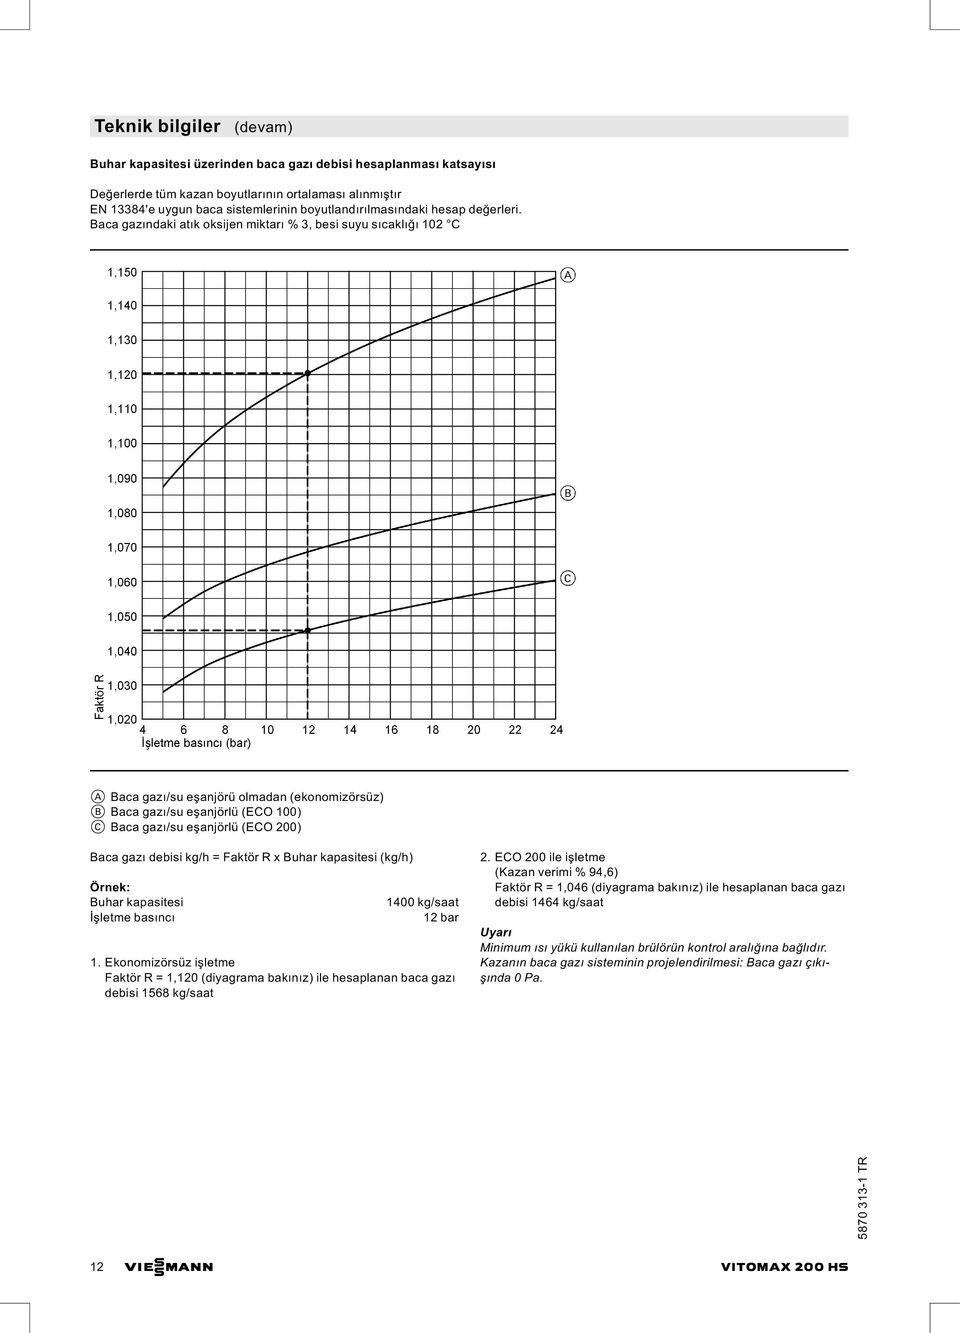 debisi kg/h = Faktör R x Buhar kapasitesi (kg/h) Örnek: Buhar kapasitesi İşletme basıncı 1400 kg/saat 12 bar 1.